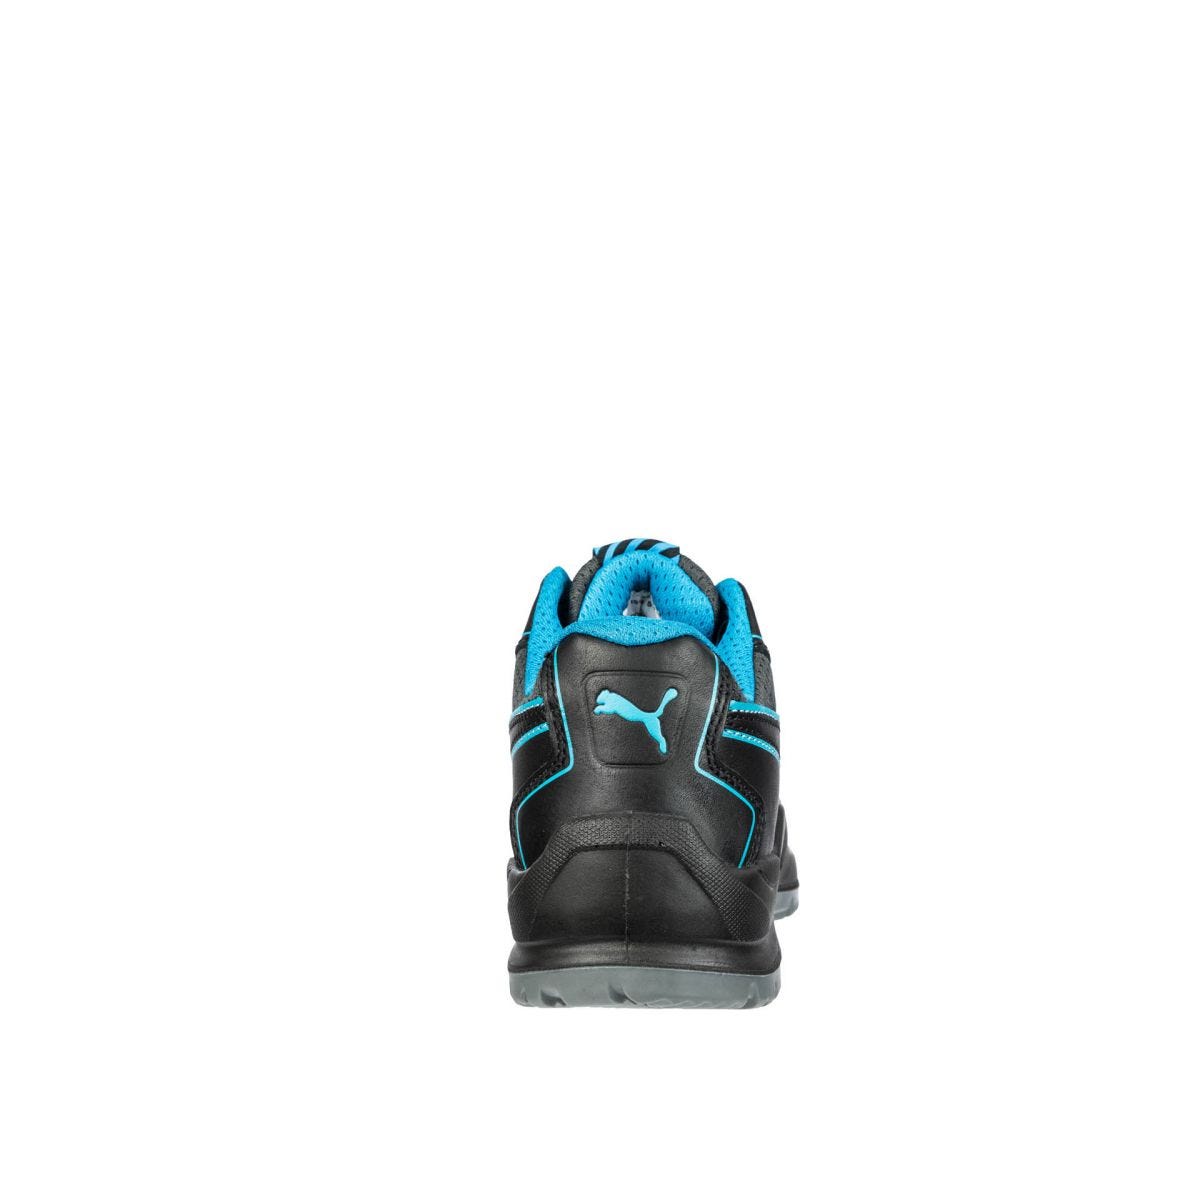 Chaussures de sécurité Niobe low WNS S3 ESD SRC bleu - Puma - Taille 42 1